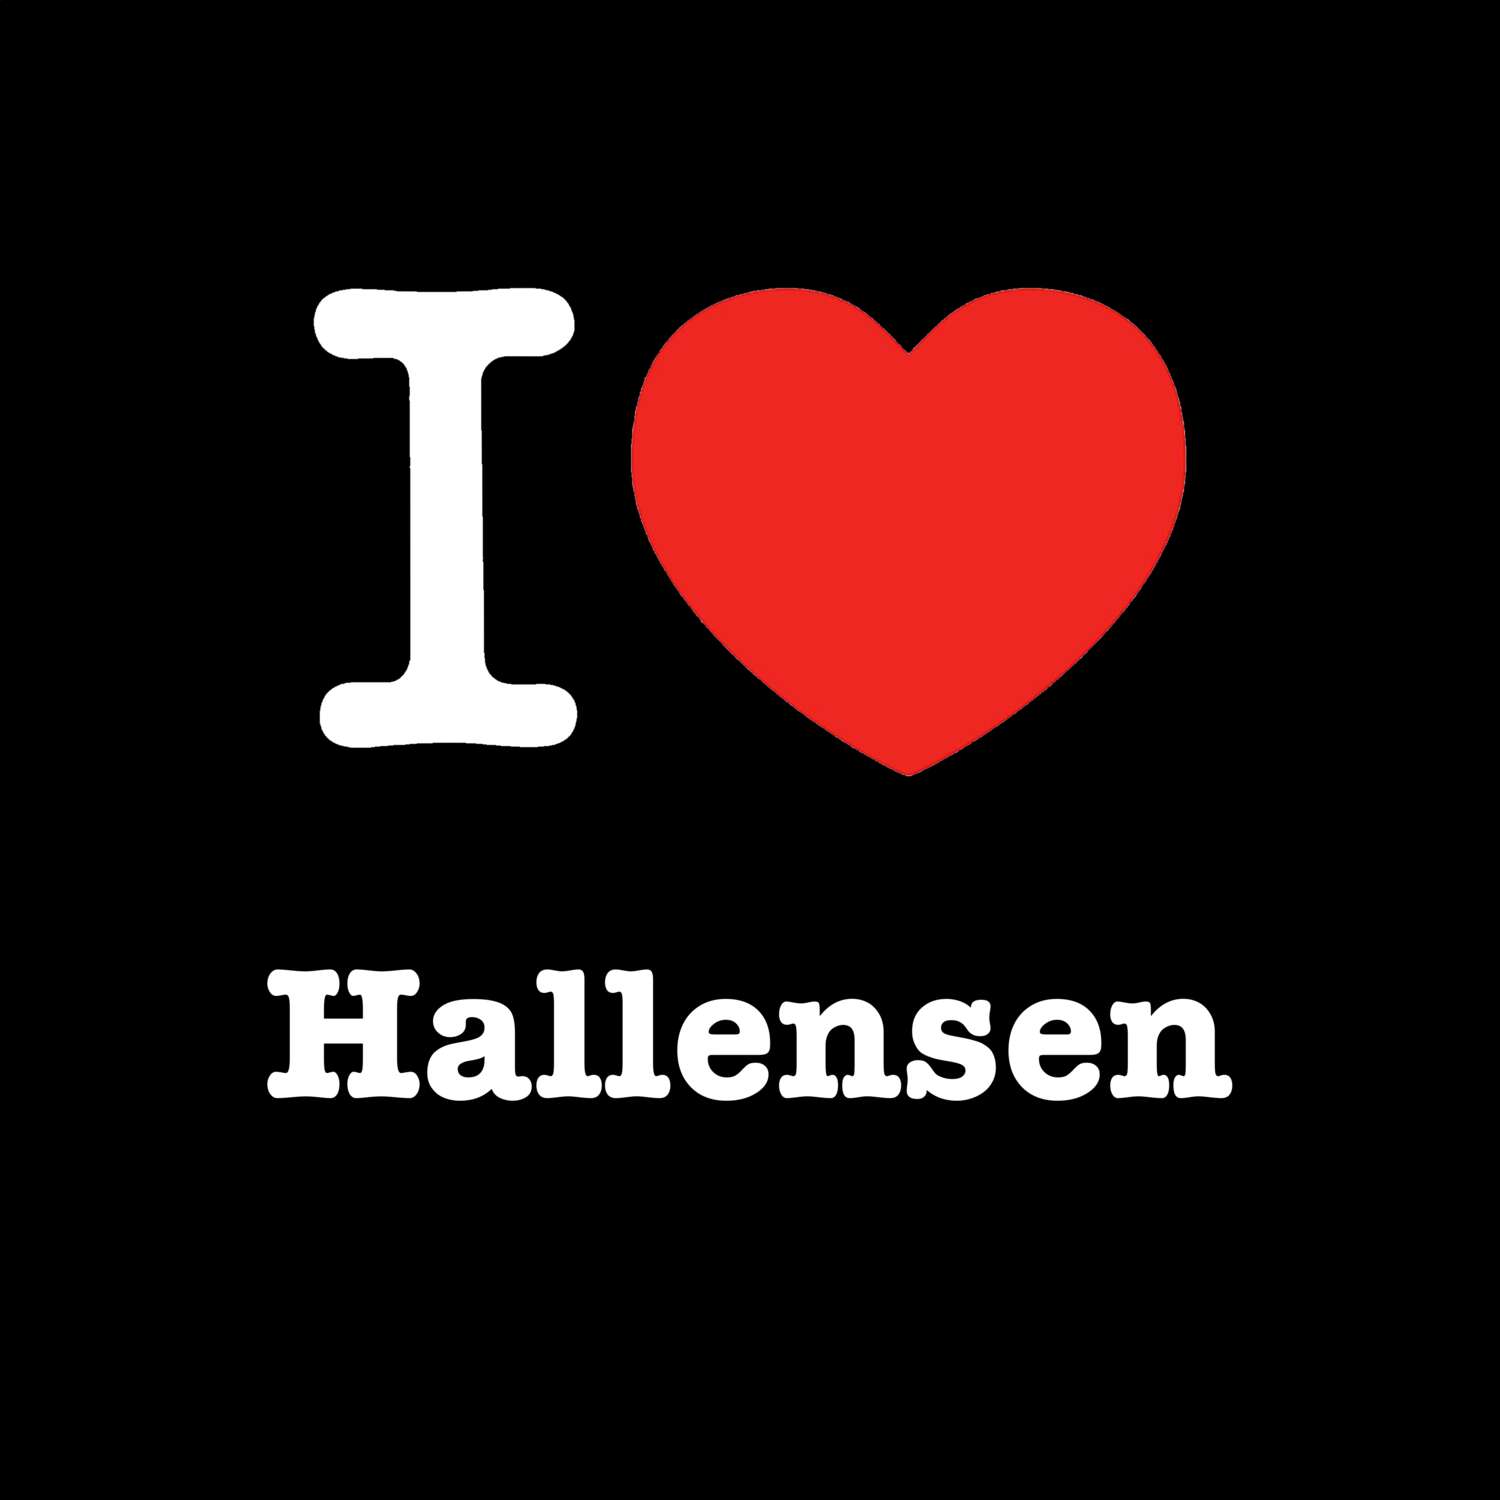 Hallensen T-Shirt »I love«